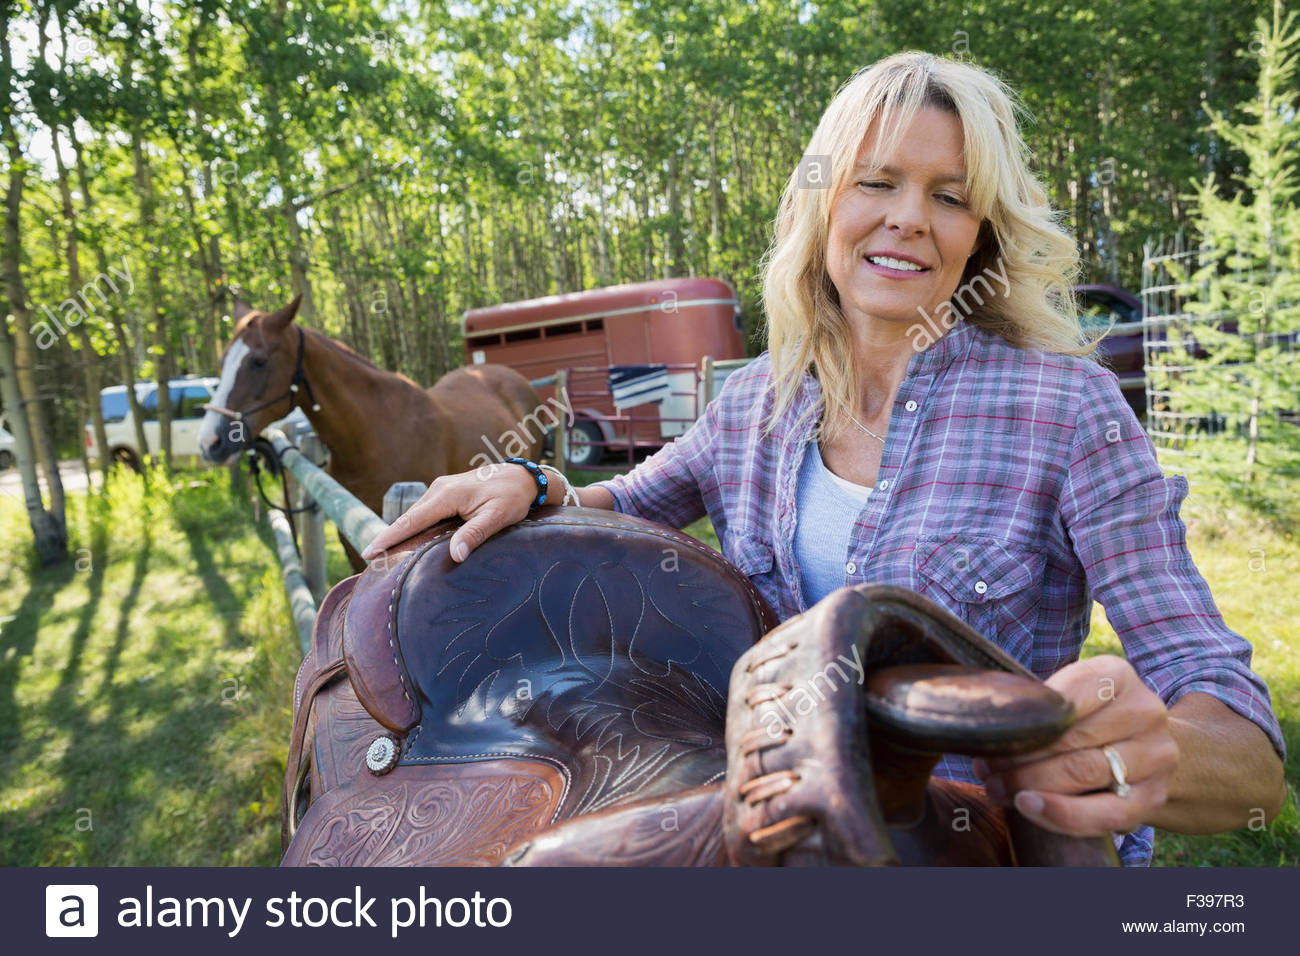 Woman adjusting saddle on fence near horse Stock Photo